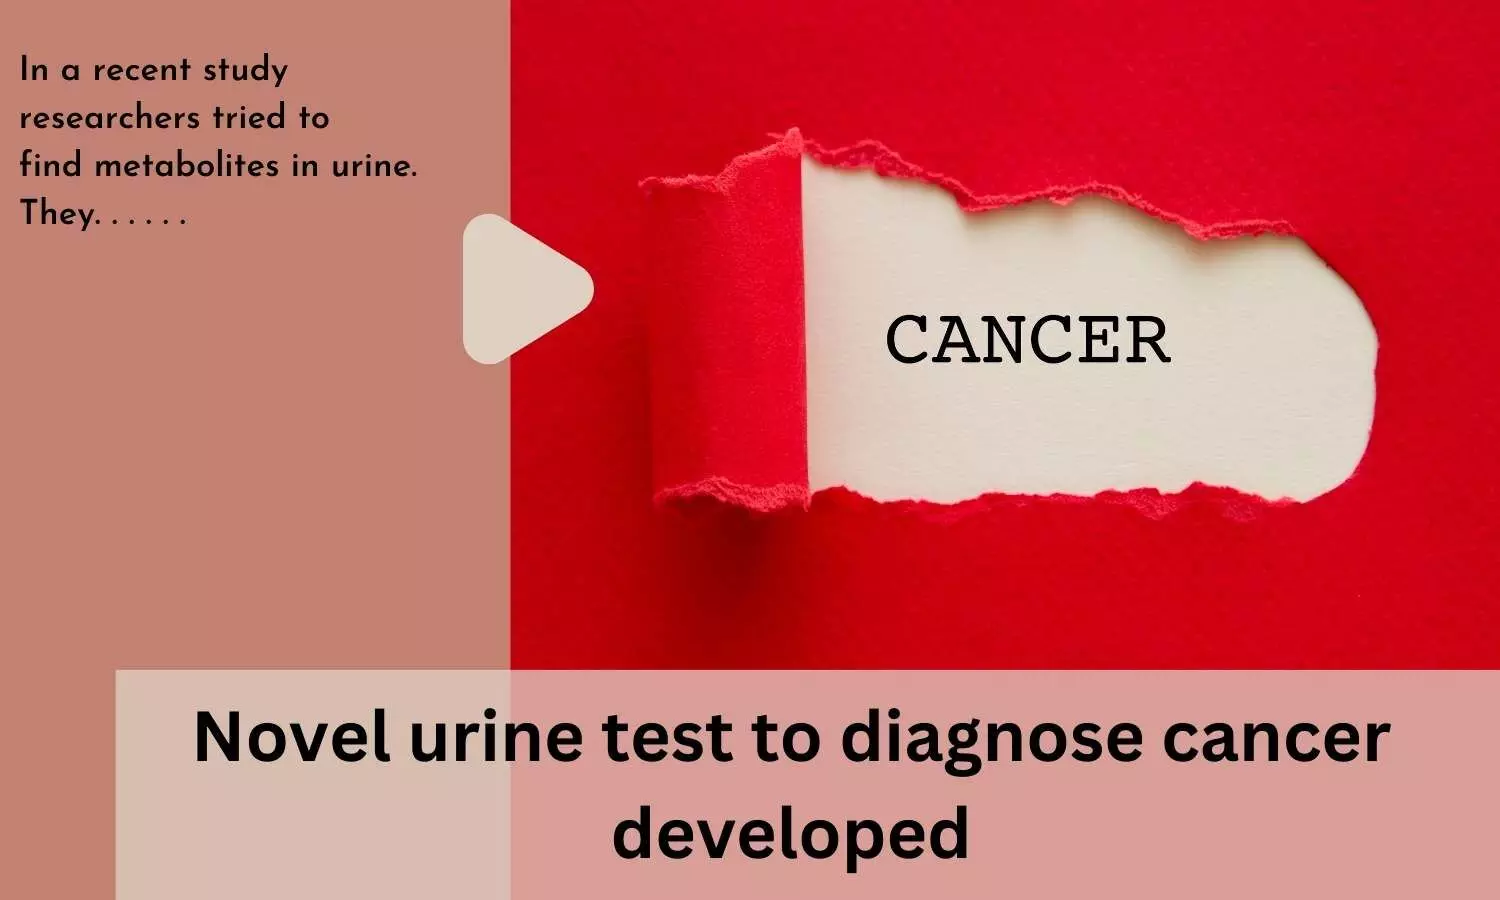 Novel urine test to diagnose cancer developed